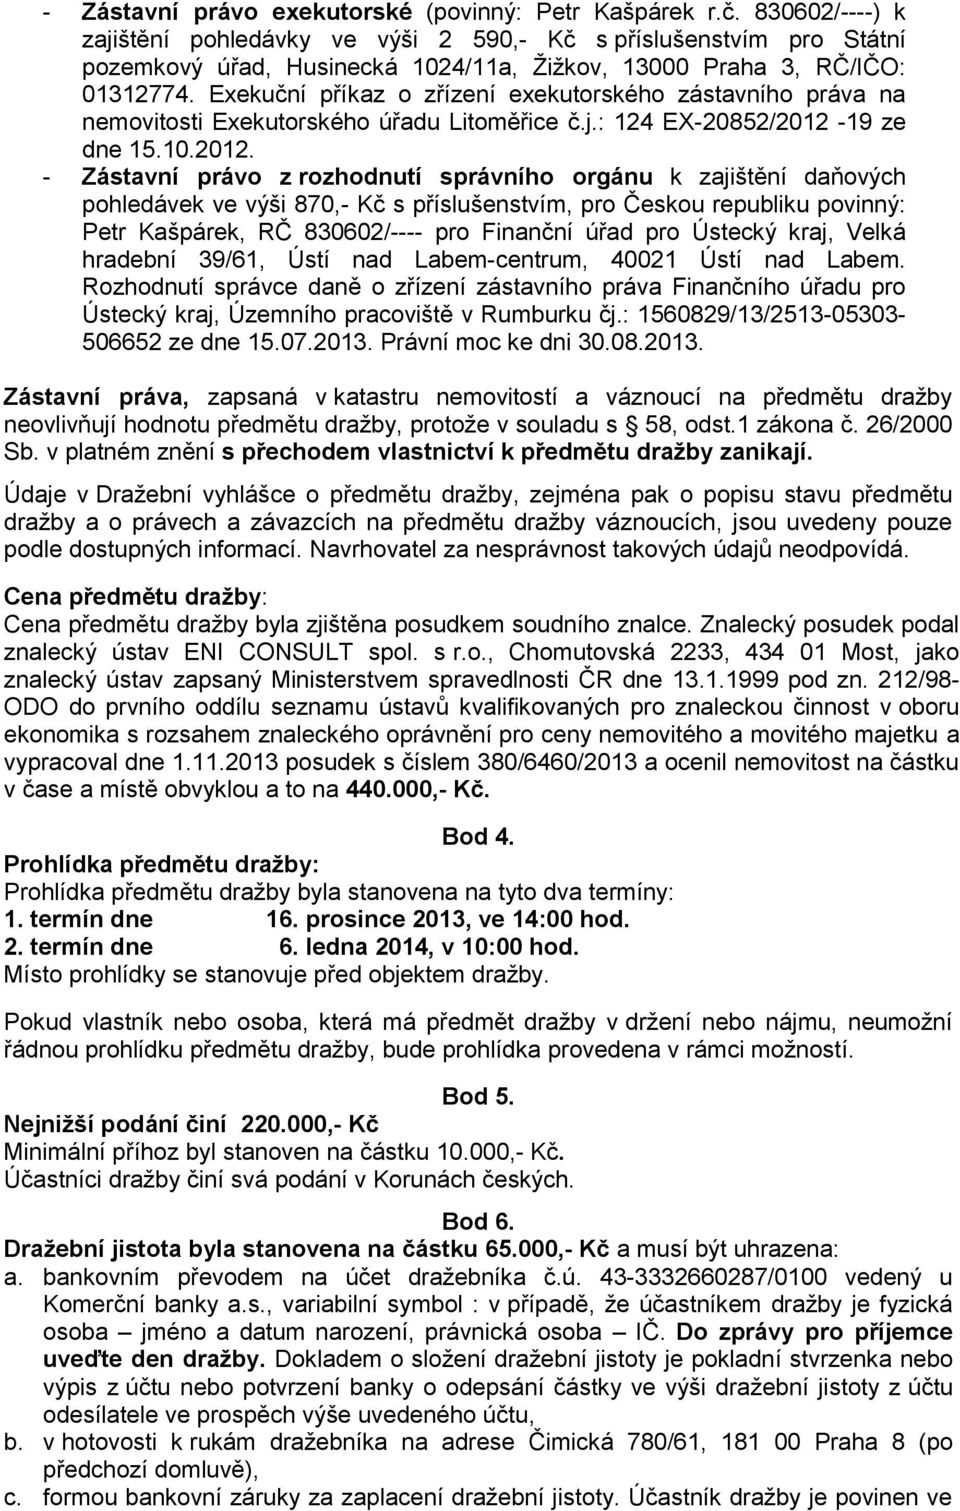 Exekuční příkaz o zřízení exekutorského zástavního práva na nemovitosti Exekutorského úřadu Litoměřice č.j.: 124 EX-20852/2012-